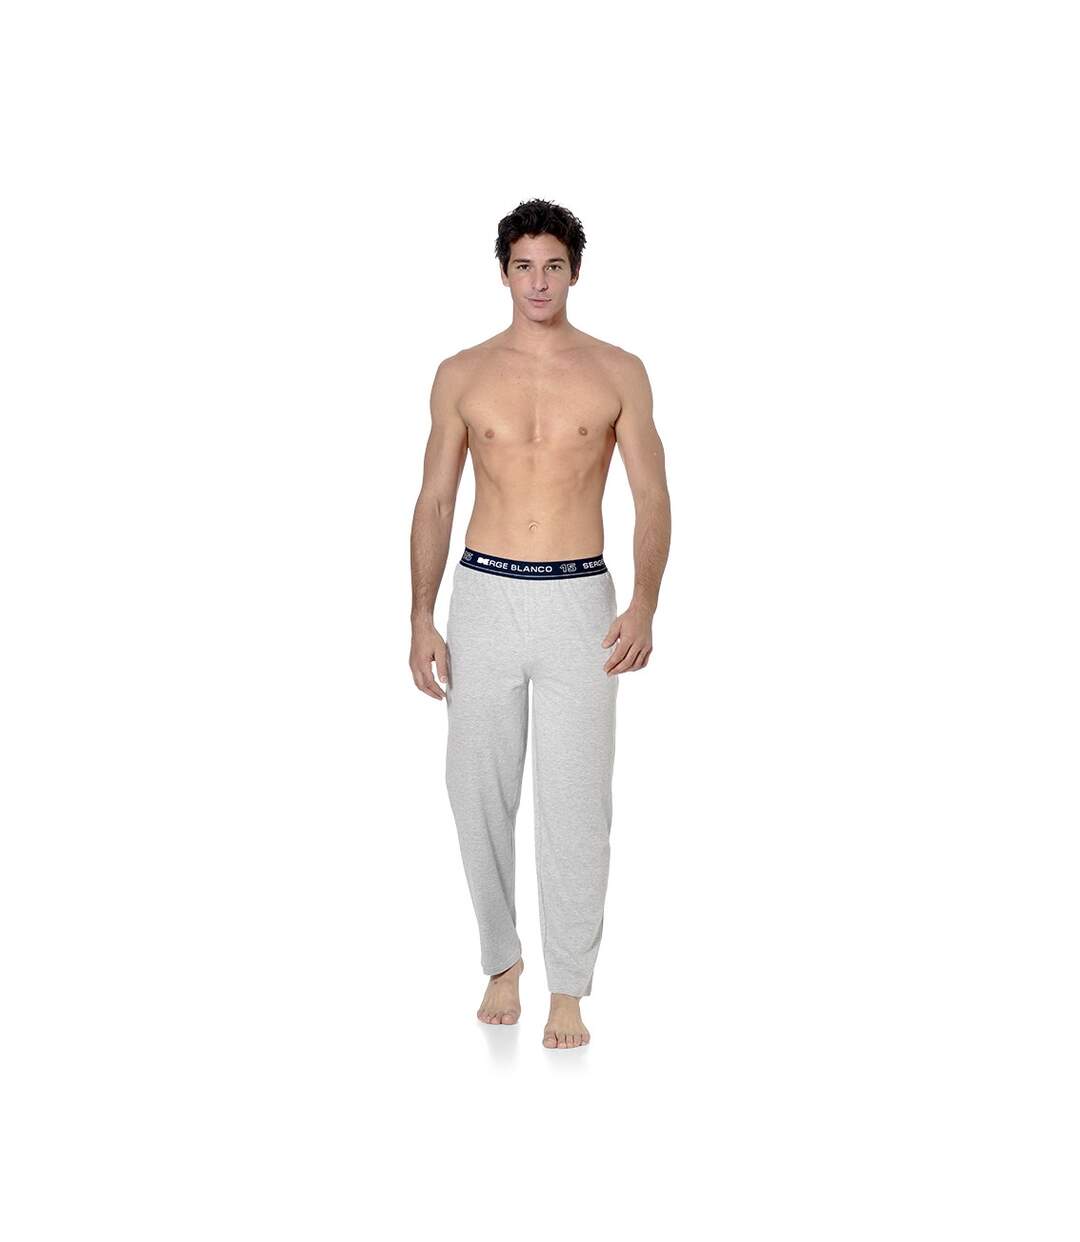 SERGE BLANCO Pyjama Homme Long Coton, Vêtements de Nuit Homme, Ensemble Doux et Confortable